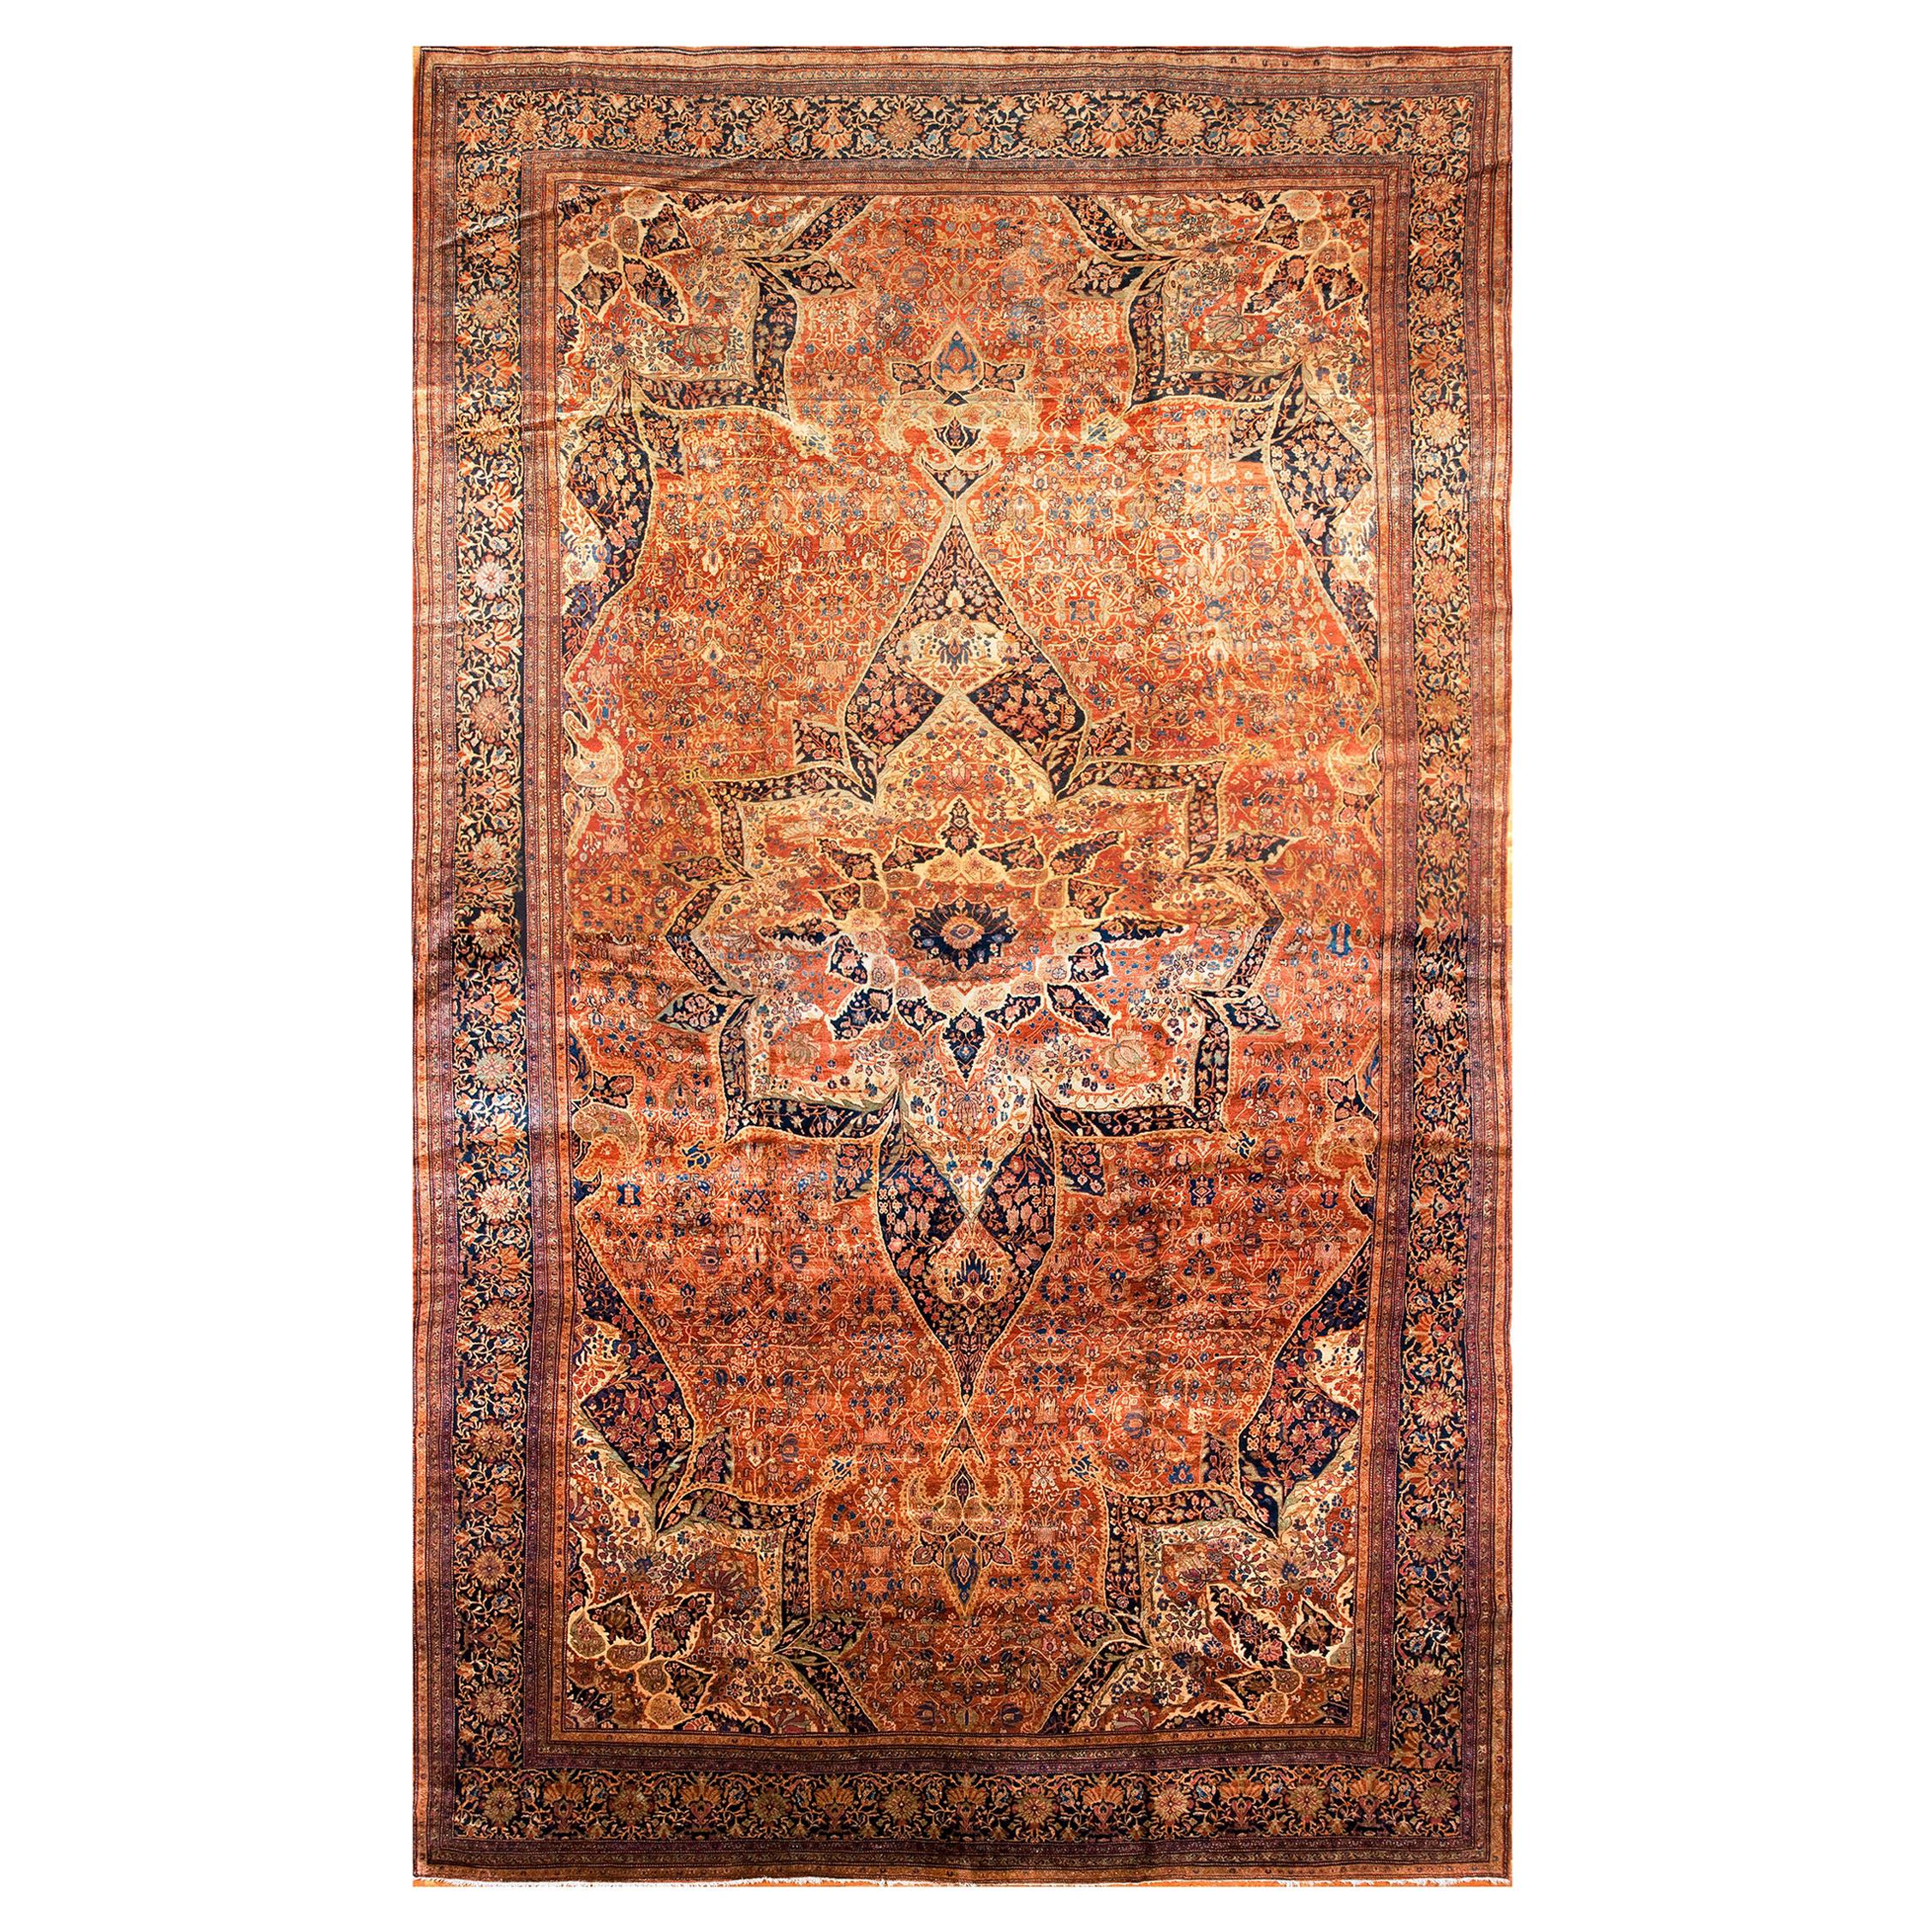 19th Century Persian Sarouk Farahan Carpet ( 14' x 23'10" - 426 x 726 )